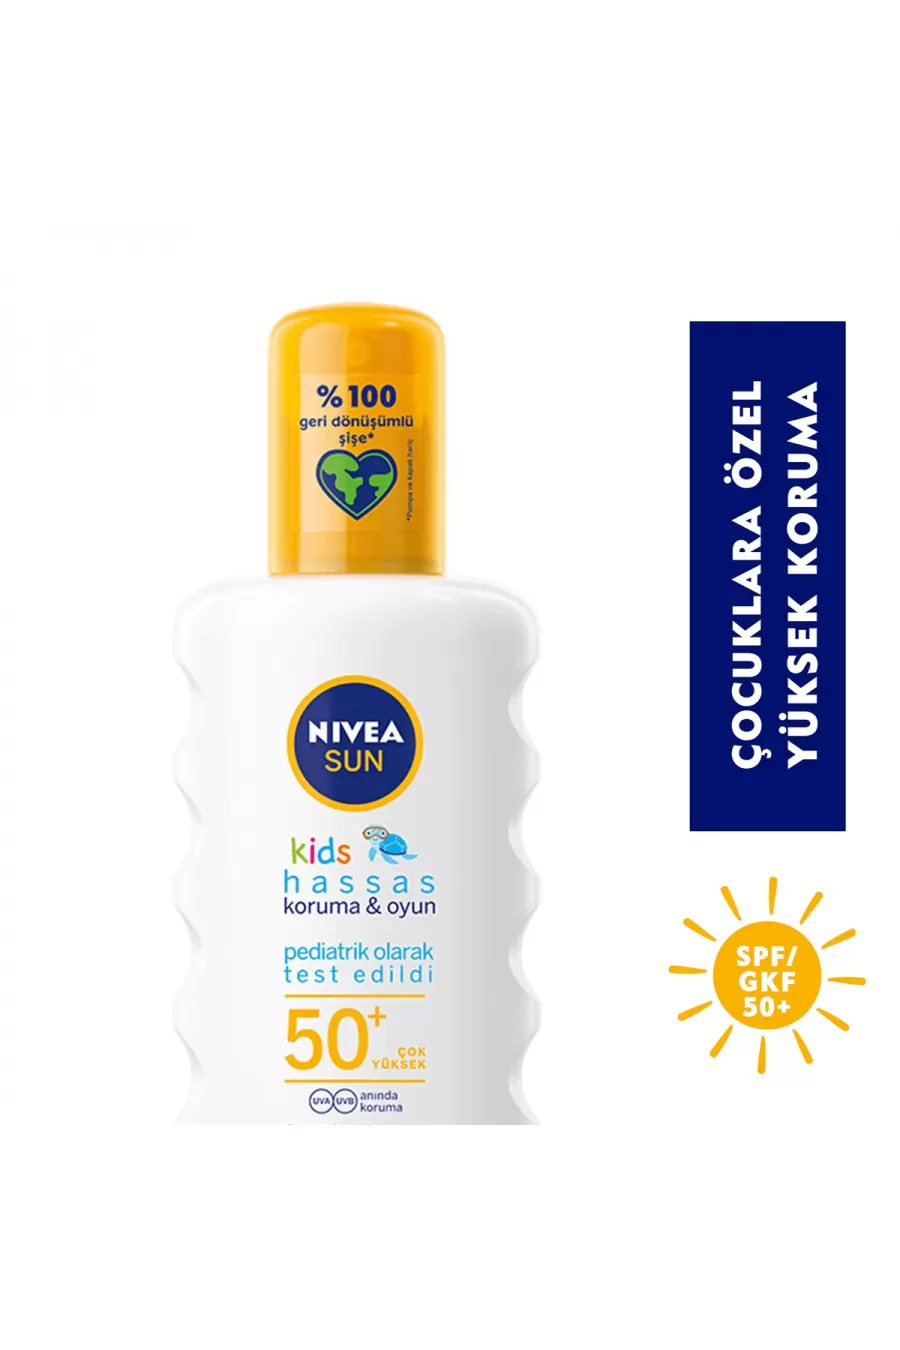 محافظت از پوست در برابر اشعه آفتاب UVA/UVB حاوی SPF 50 نیوآ NIVEA ضد آفتاب بدن کودکان